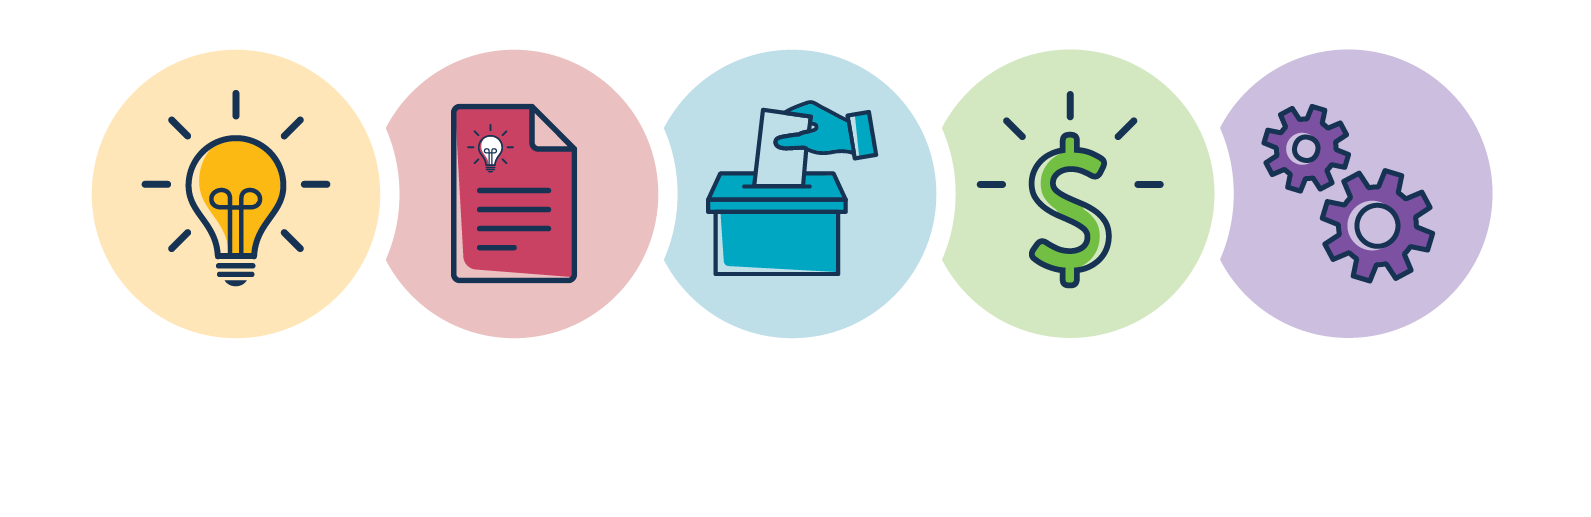 Participatory Budgeting Logo